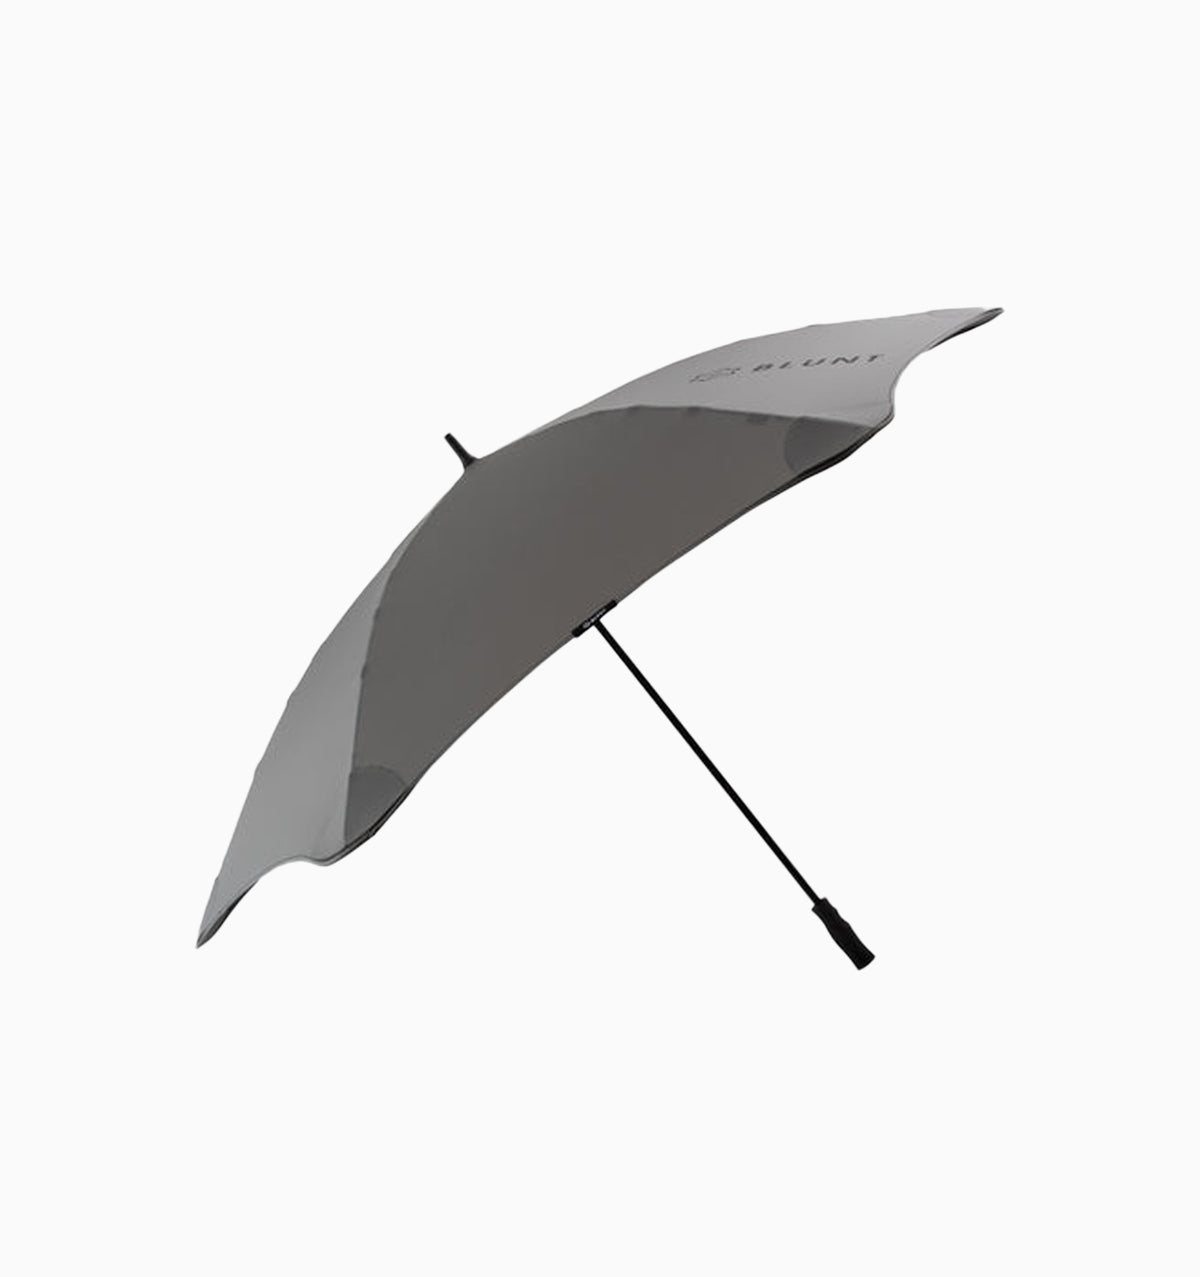 Blunt Sport Umbrella - Charcoal / Black